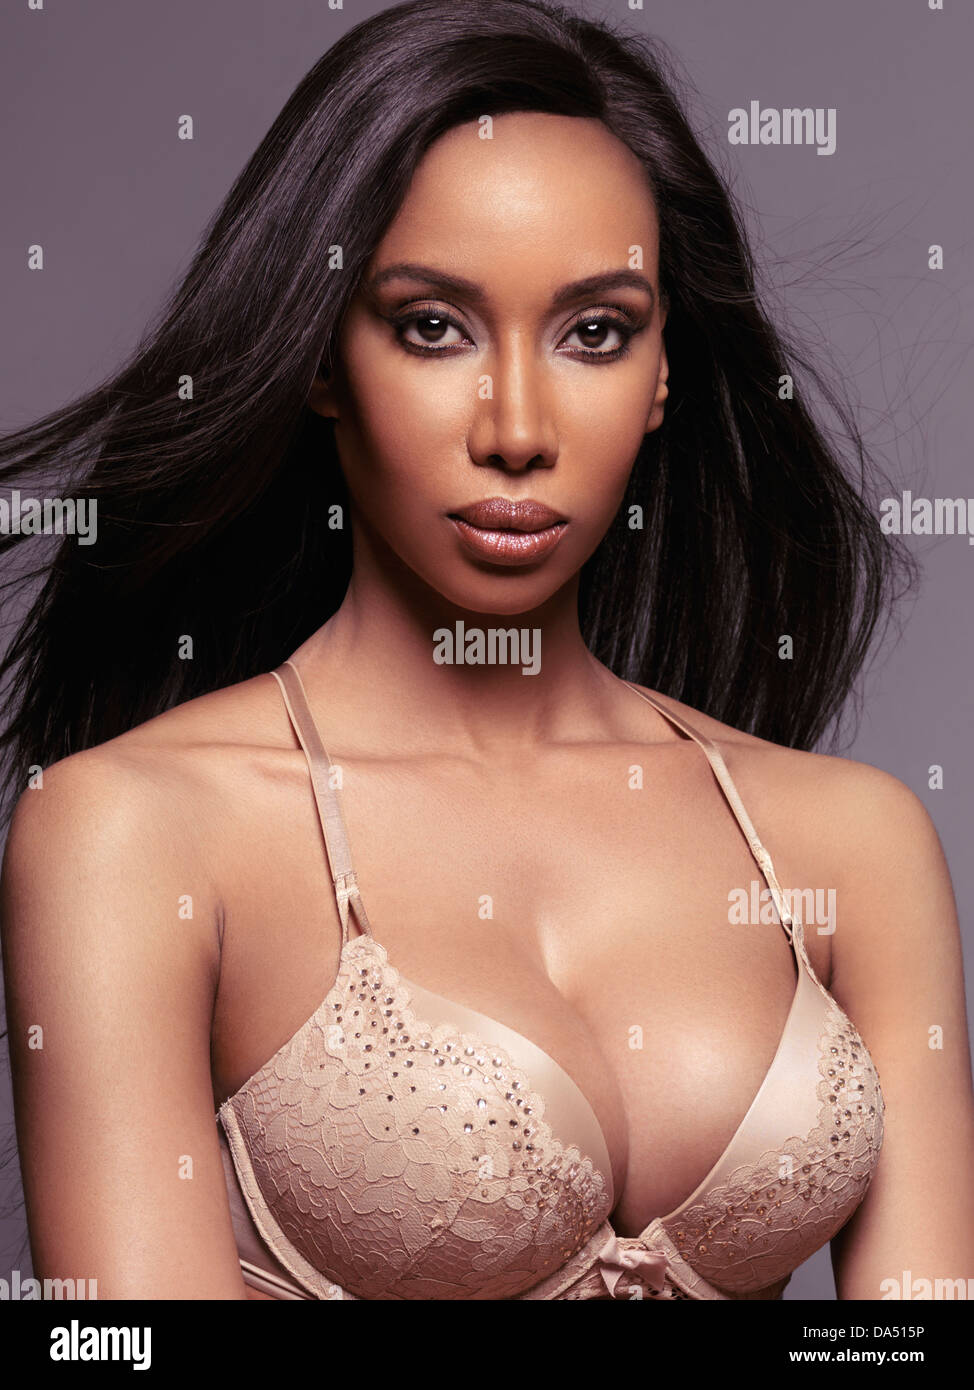 Führerschein und Fingerabdrücke auf MaximImages.com - Schönheitsporträt einer glamourösen schwarzen Frau mit langen, geraden Haaren und Dessous Stockfoto